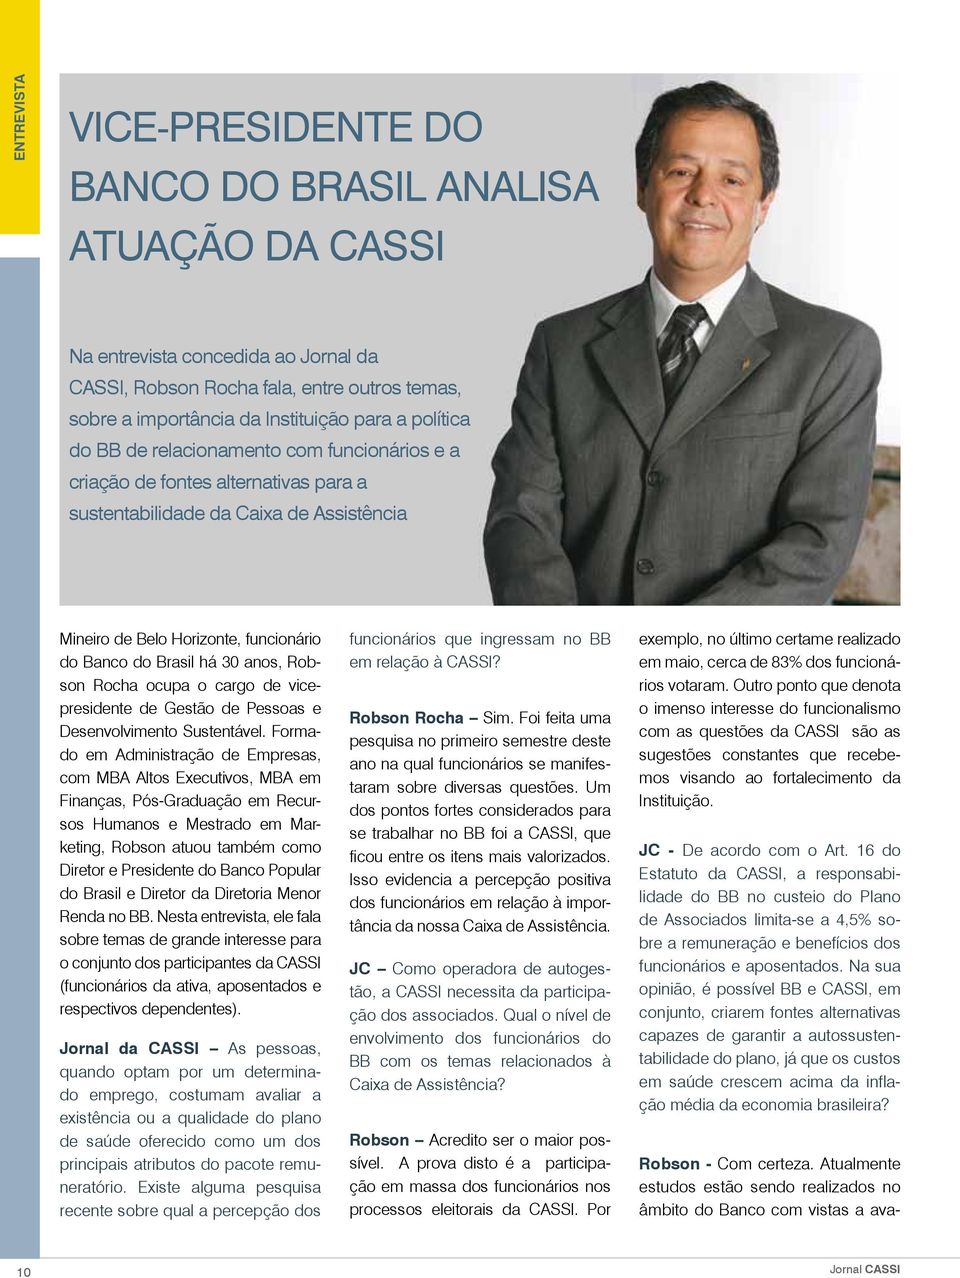 anos, Robson Rocha ocupa o cargo de vicepresidente de Gestão de Pessoas e Desenvolvimento Sustentável.